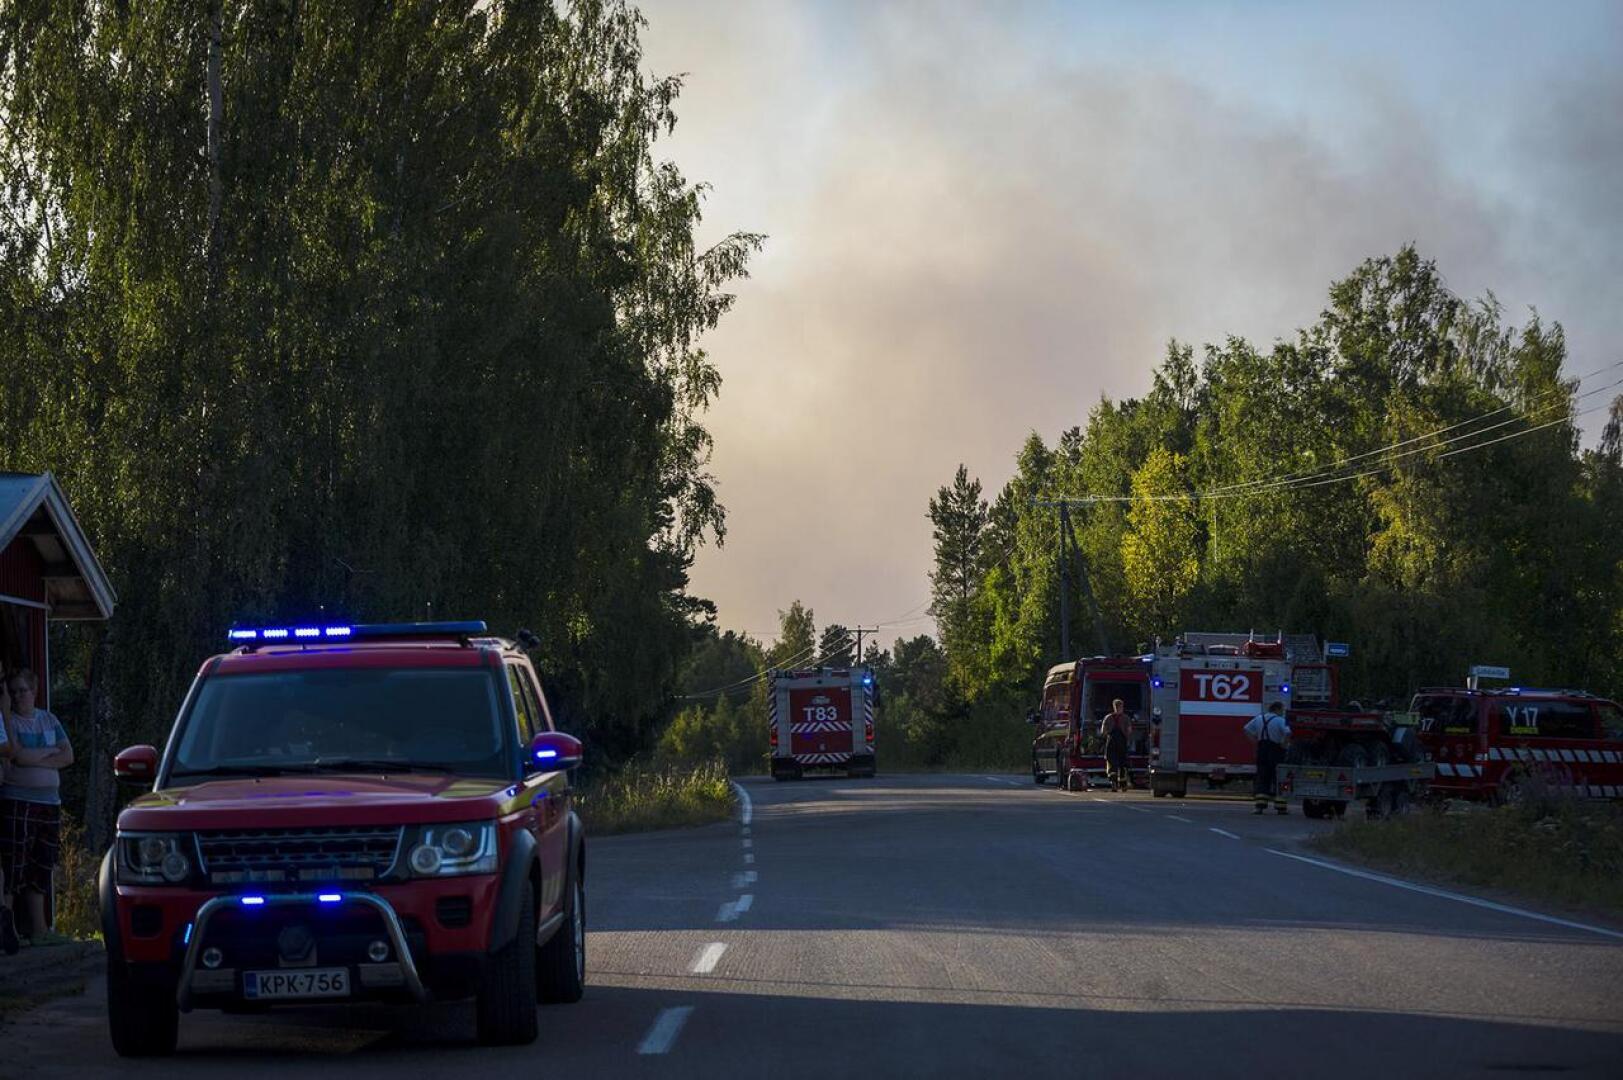 Pyhärannassa on noin sadan hehtaarin metsäpalo, joka työllistää vapaapalokuntalaisten ja Varsinais-Suomen pelastuslaitoksen väen lisäksi myös puolustusvoimien virka-apuosastoa.